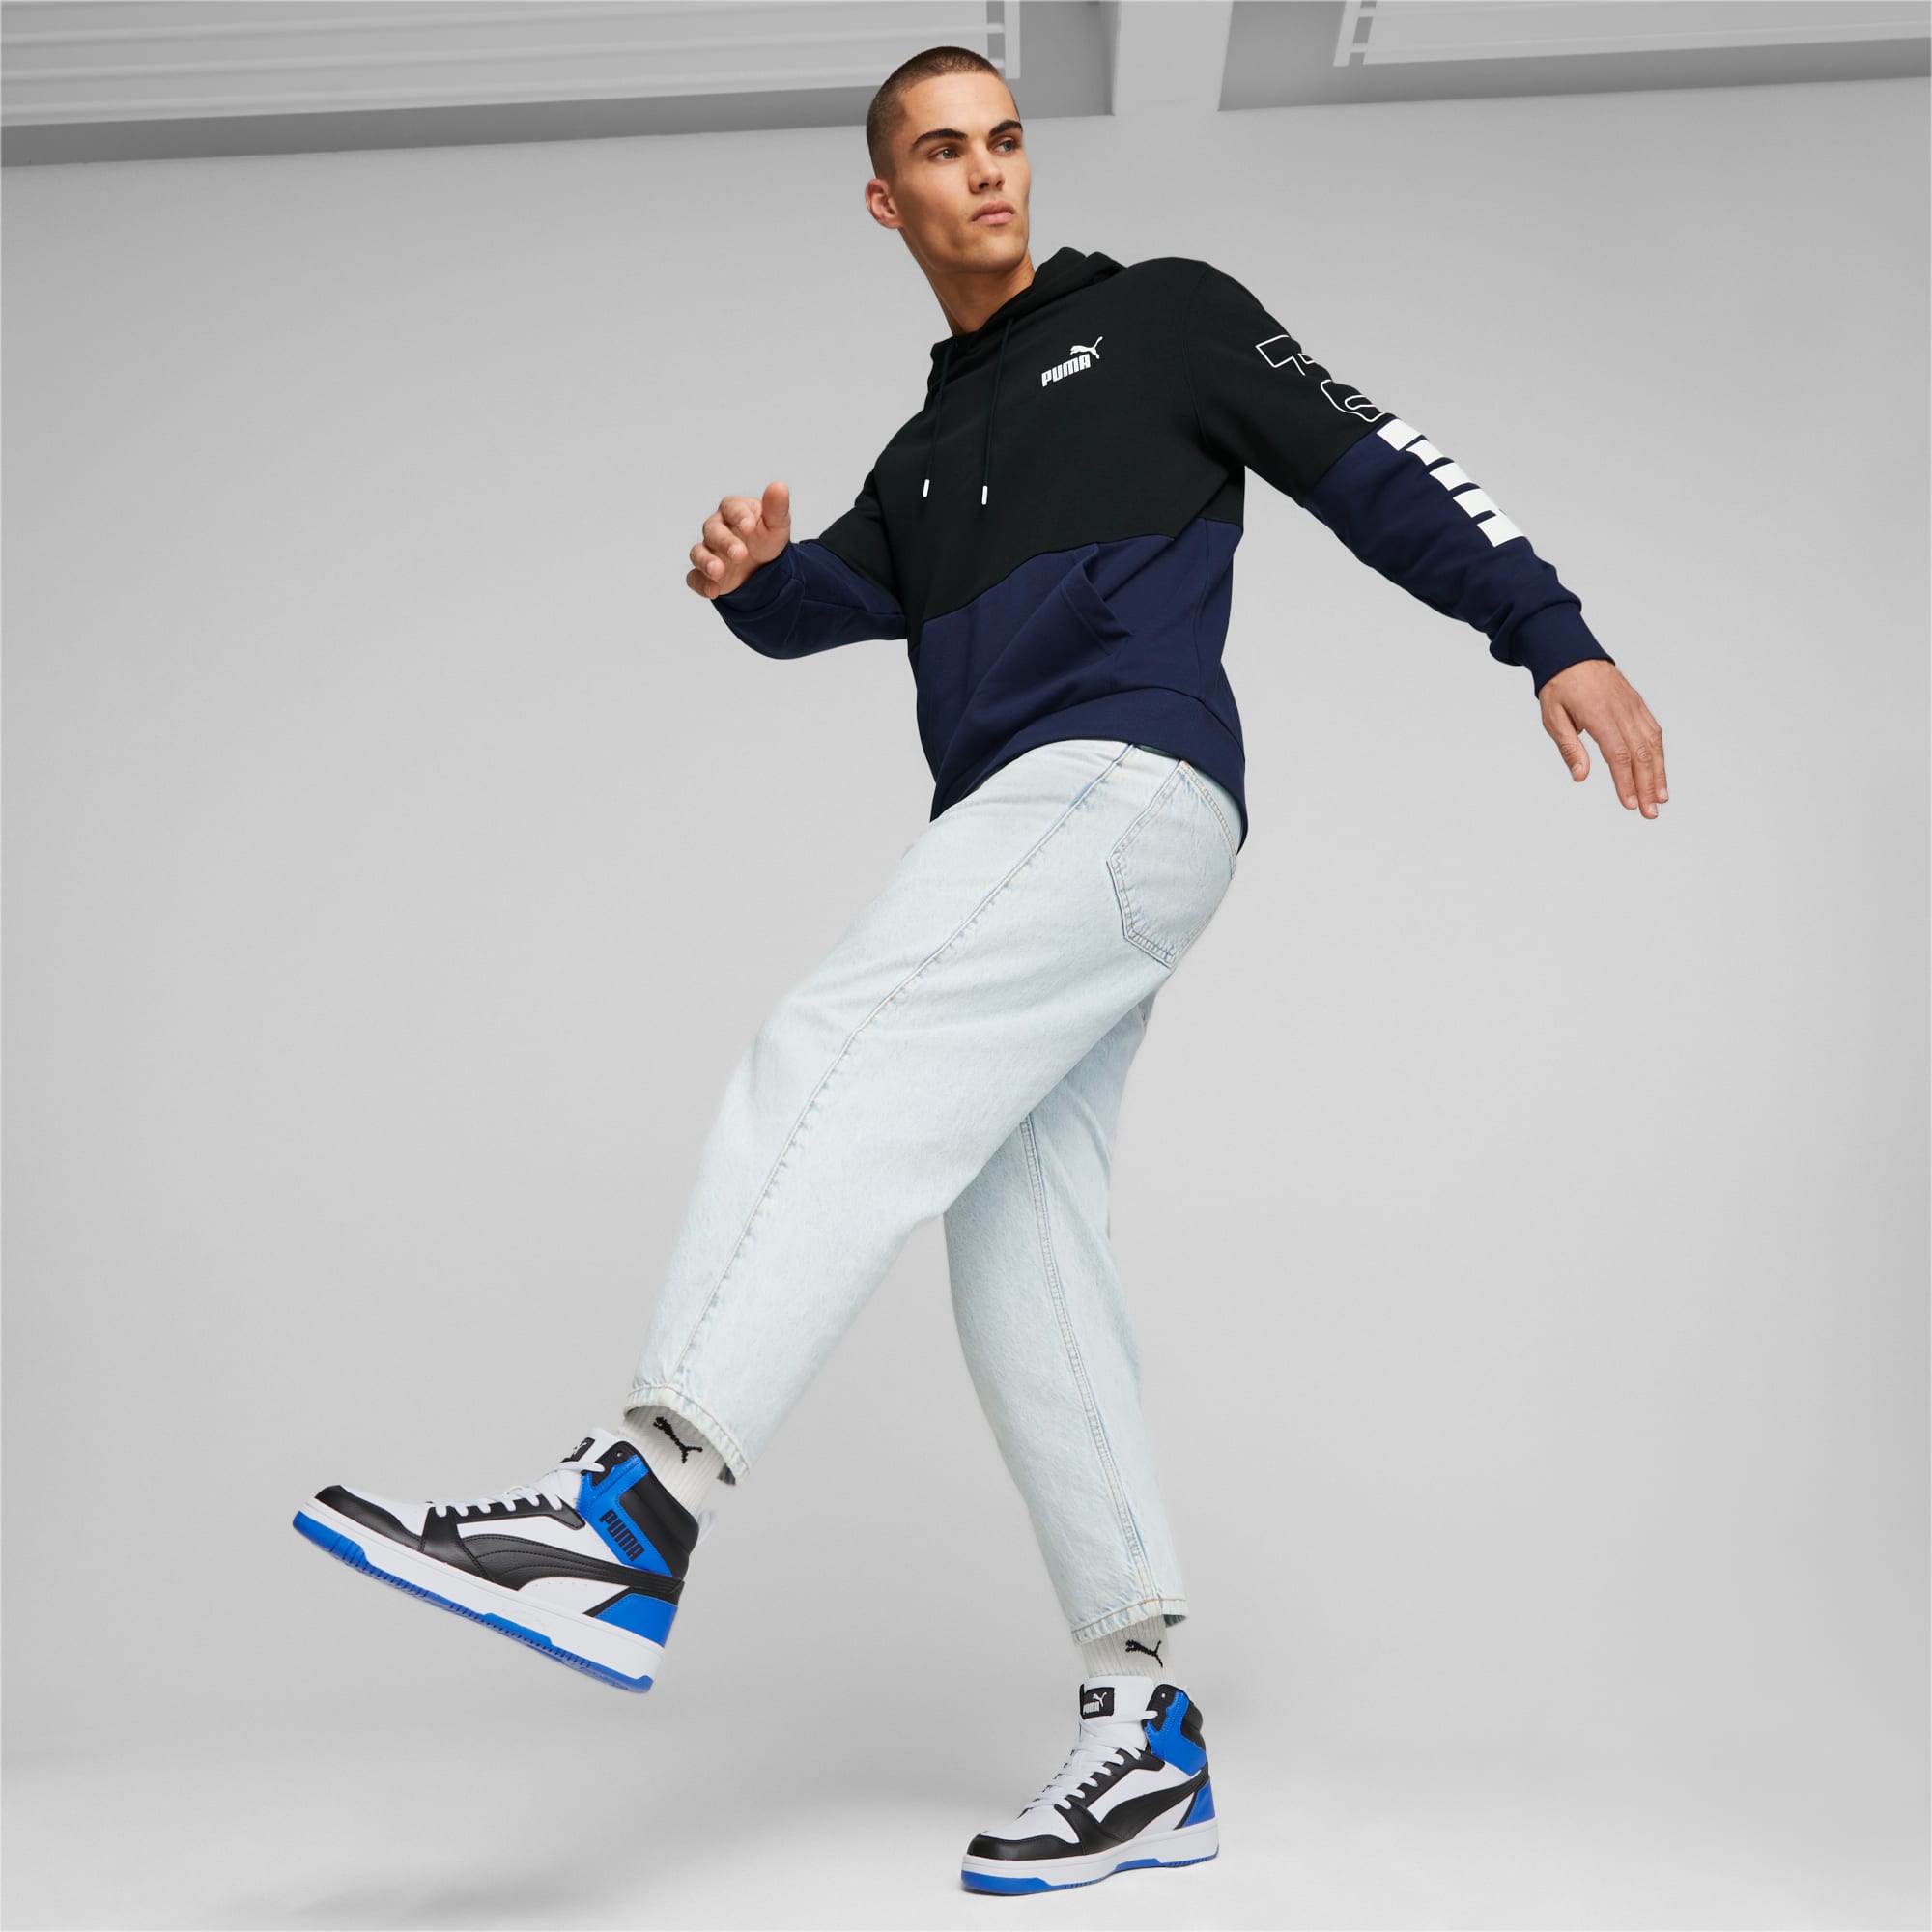 Sneaker Rebound Per Donna, Bianco/Blu/Nero/Altro